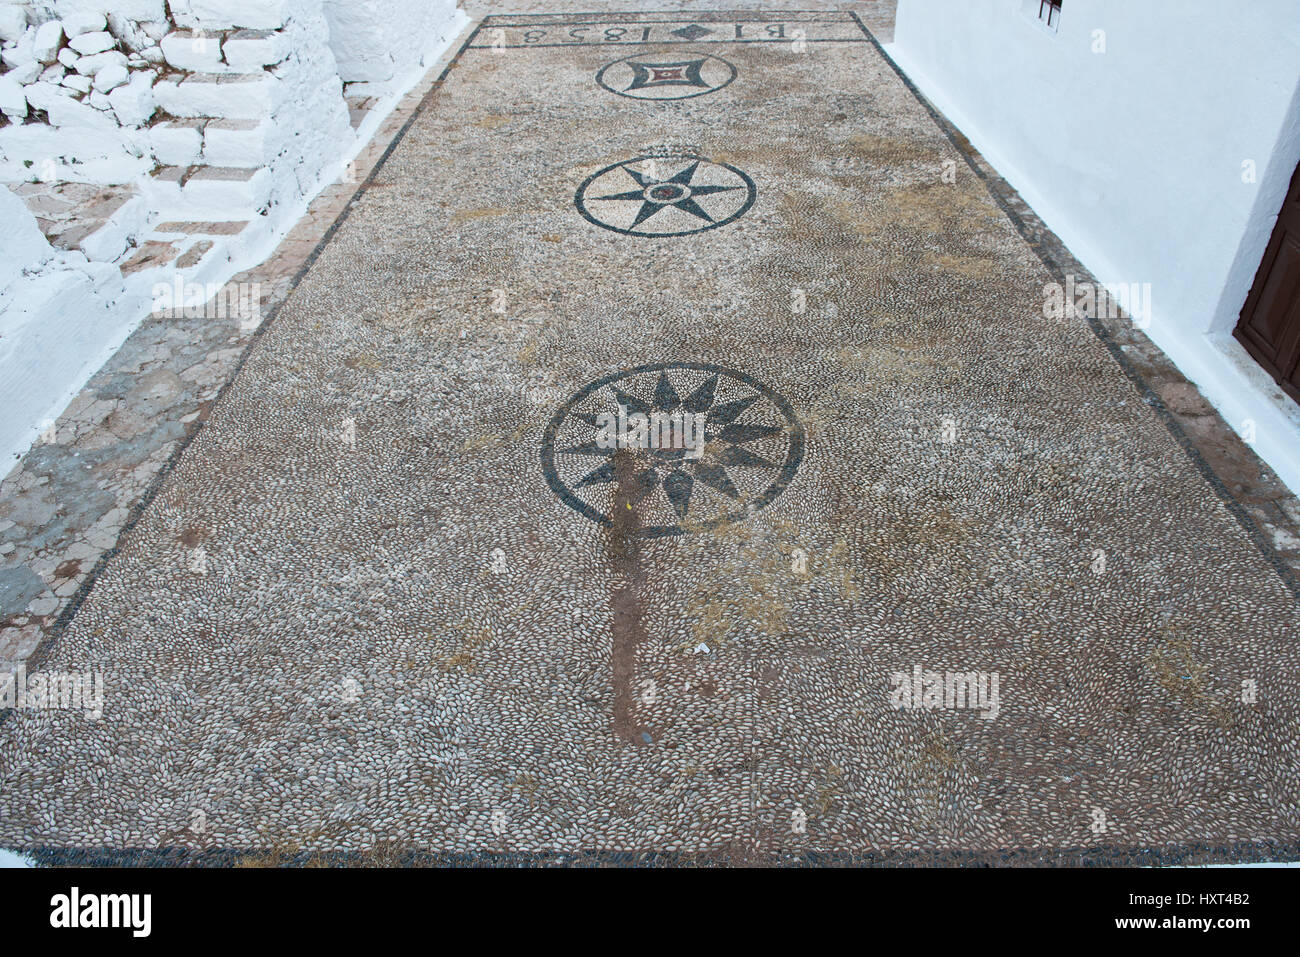 Boden aus weiß-schwarzem Kieselmosaik auf der Burg, Kastro, Insel Kastellorizo, Dodekanes, Griechenland Stock Photo